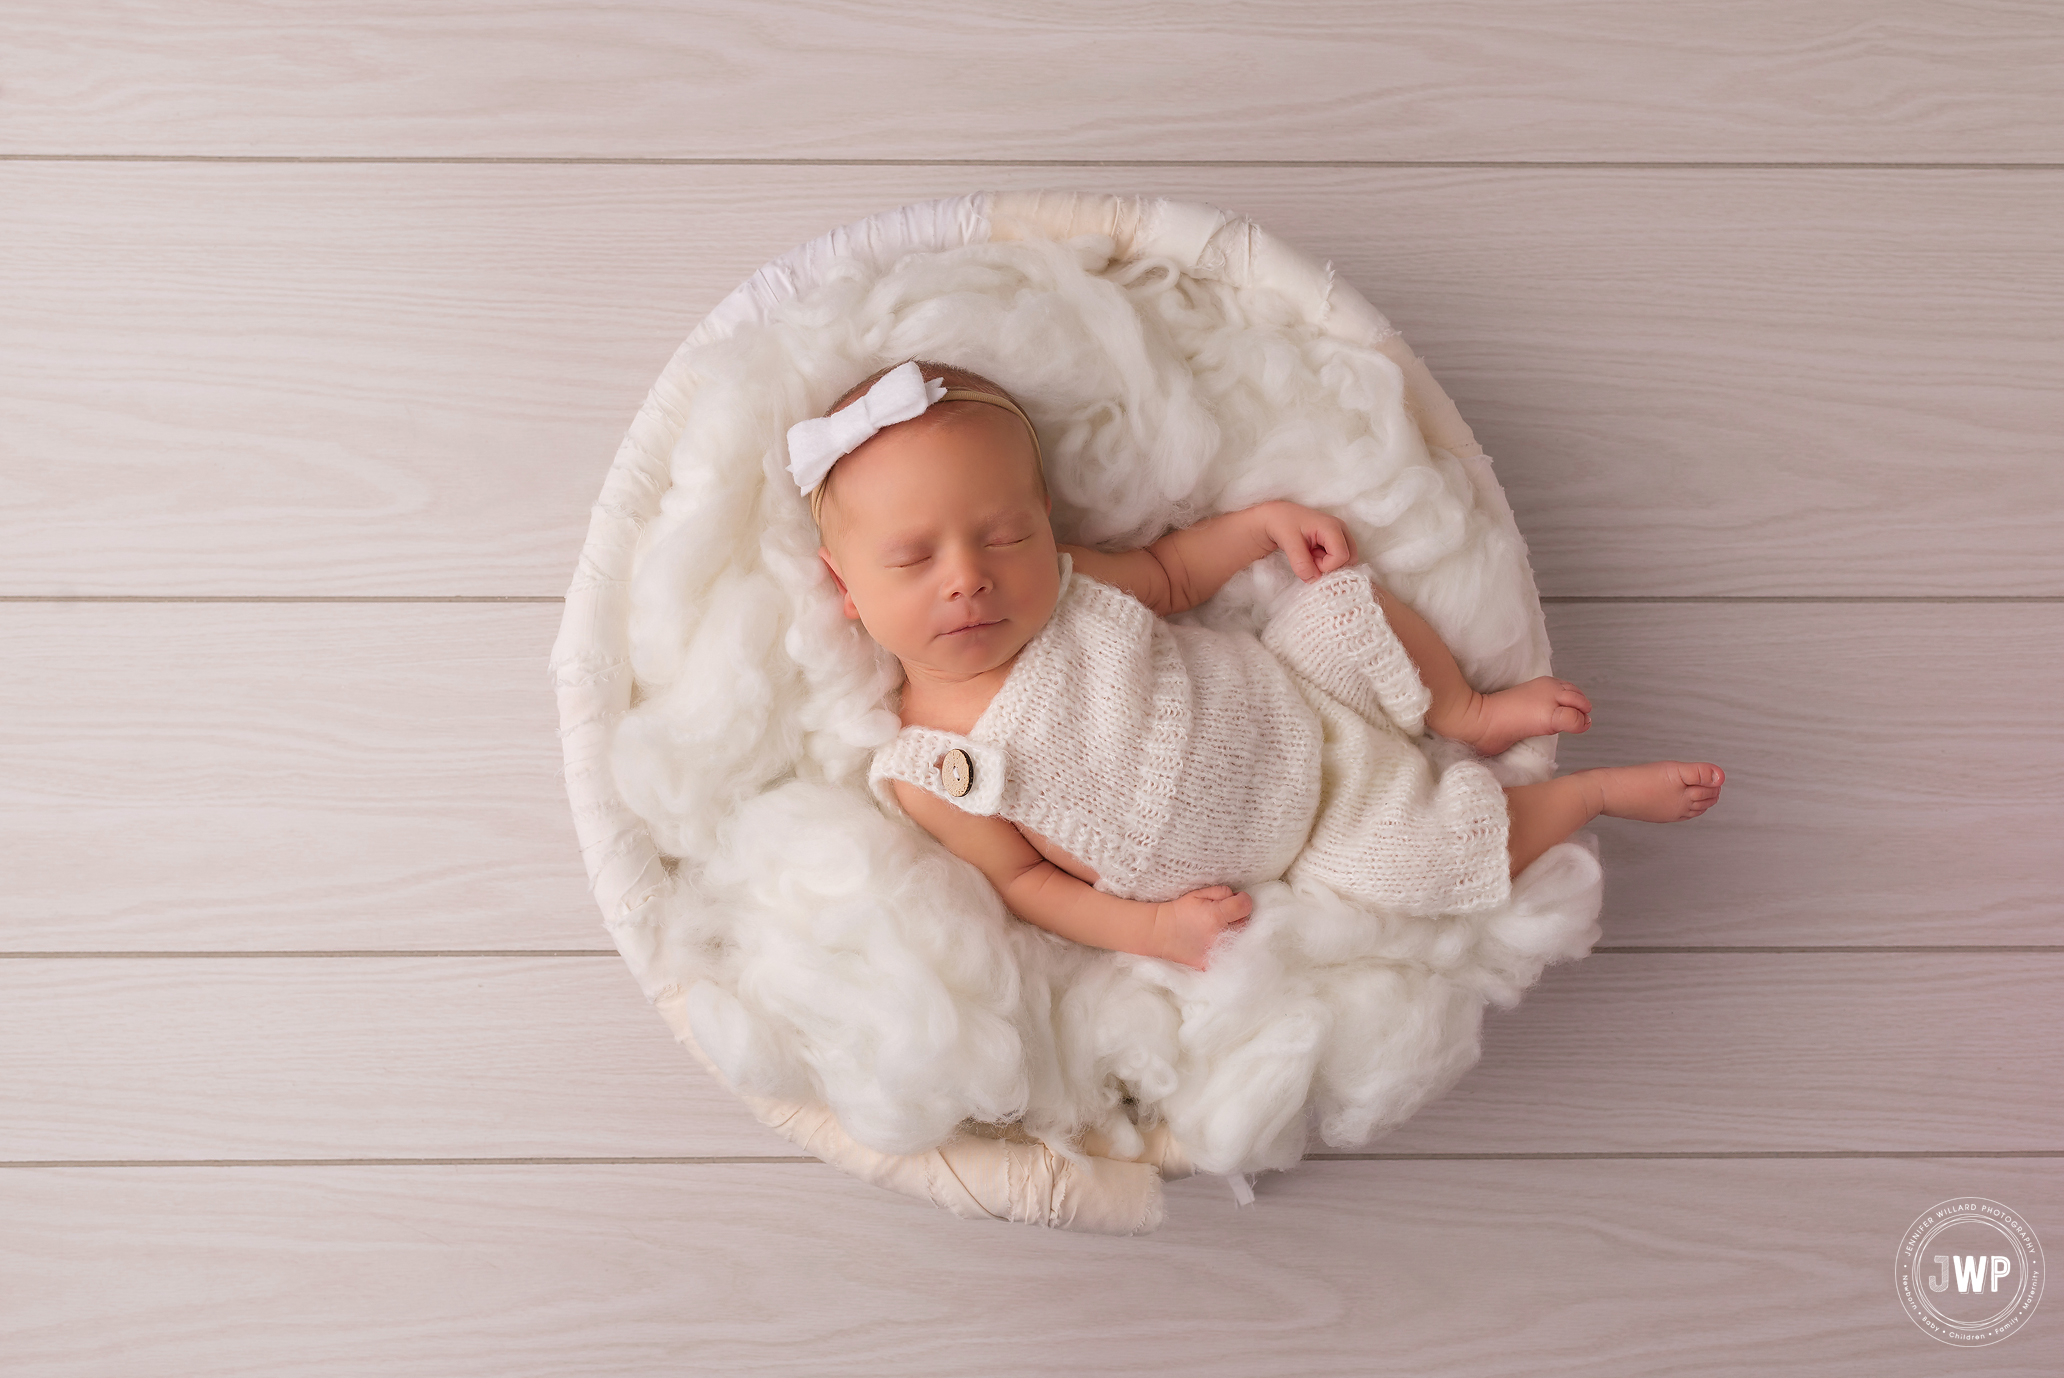 Kingston newborn photographer white neutral boho baby girl